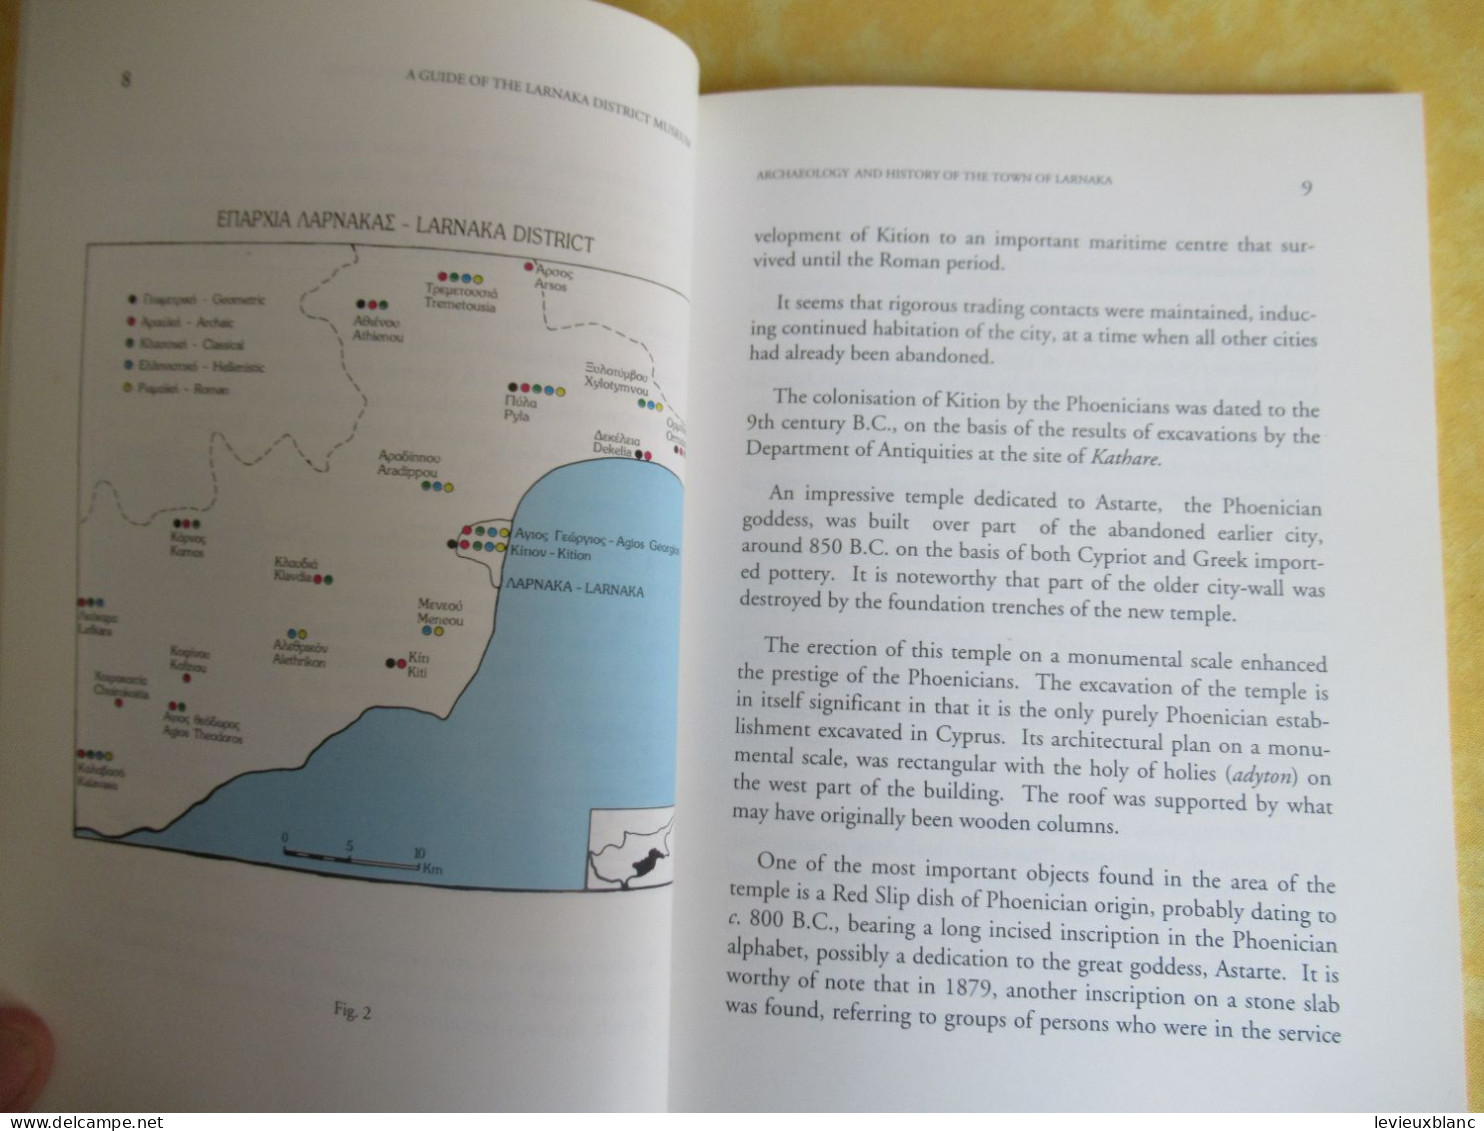 Livret De Présentation / A Guide  To The LARNAKA District   MUSEUM/ Flourentzos/ Nicosie/CHYPRE /1996      PCG525 - Cuadernillos Turísticos